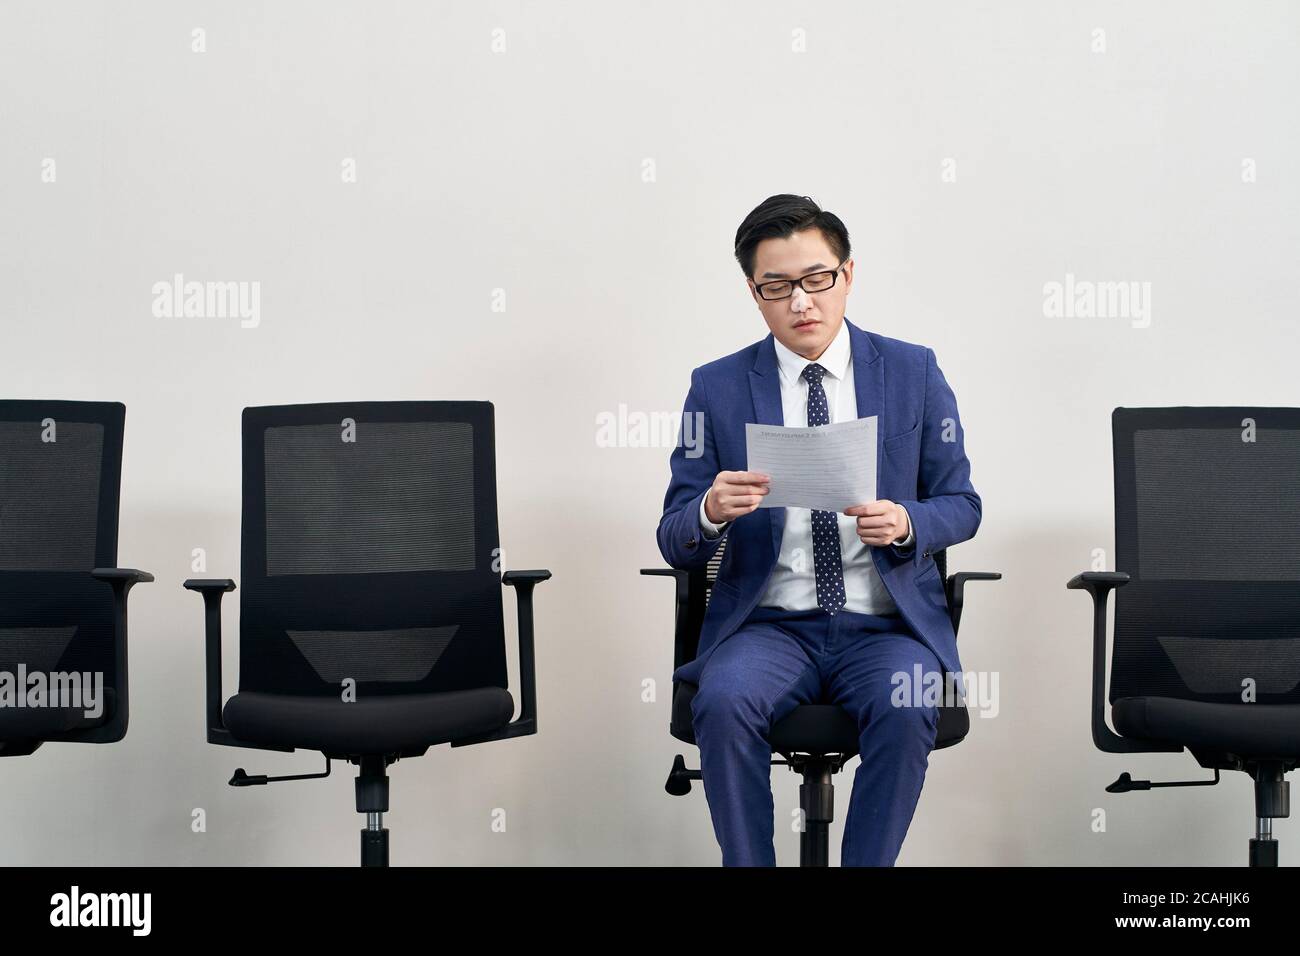 Junge asiatische männliche Arbeitssuchende Vorbereitung für Interview während warten in der Schlange Stockfoto